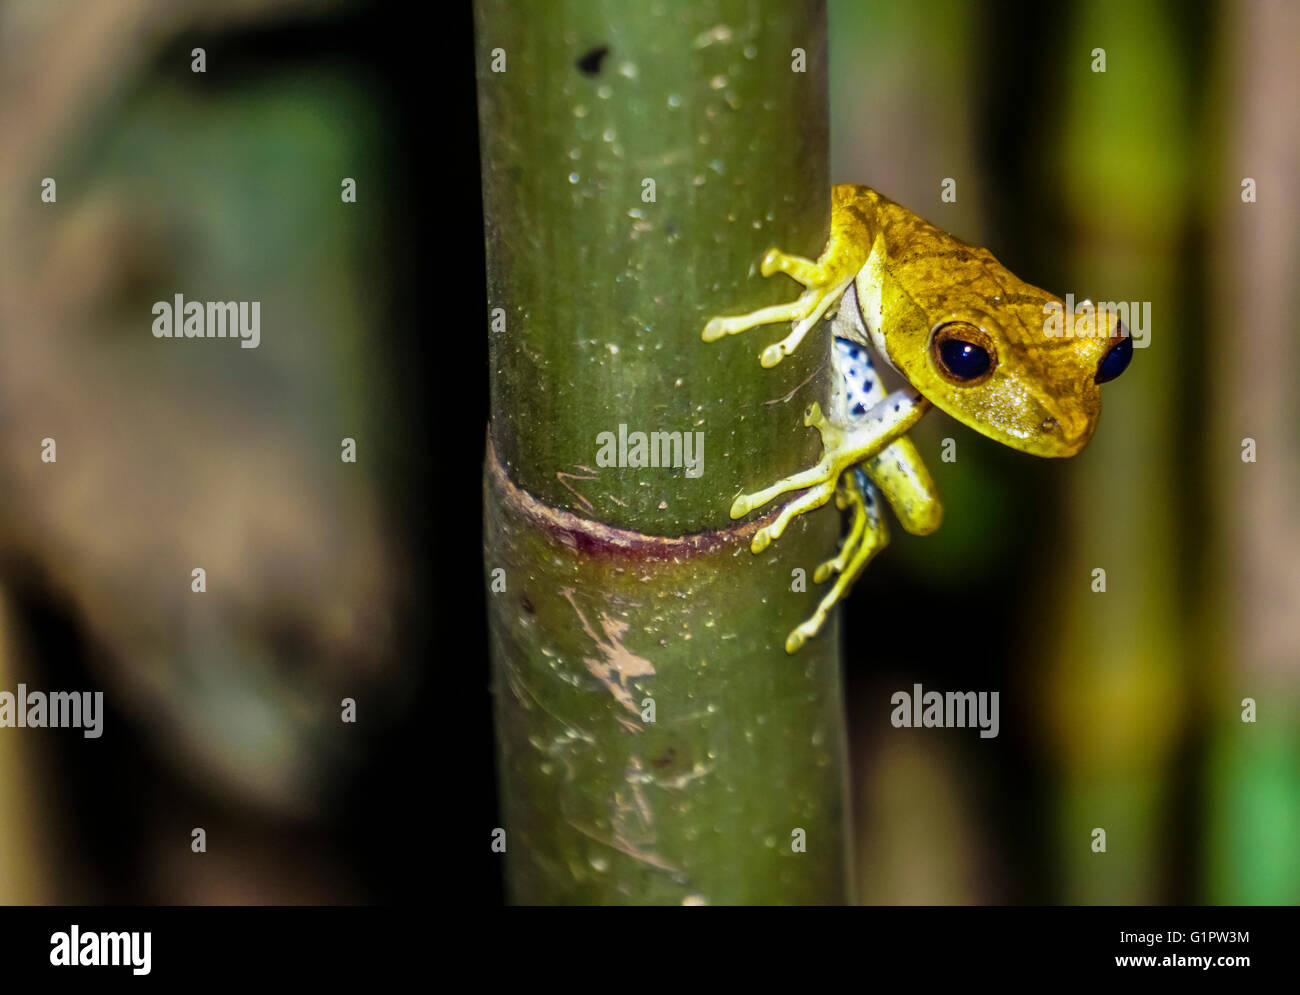 Poison dart frog (también conocida como la rana venenosa de dardo, la rana venenosa o anteriormente conocido como la rana flecha venenosa) fotografiado en el Amazonas Foto de stock